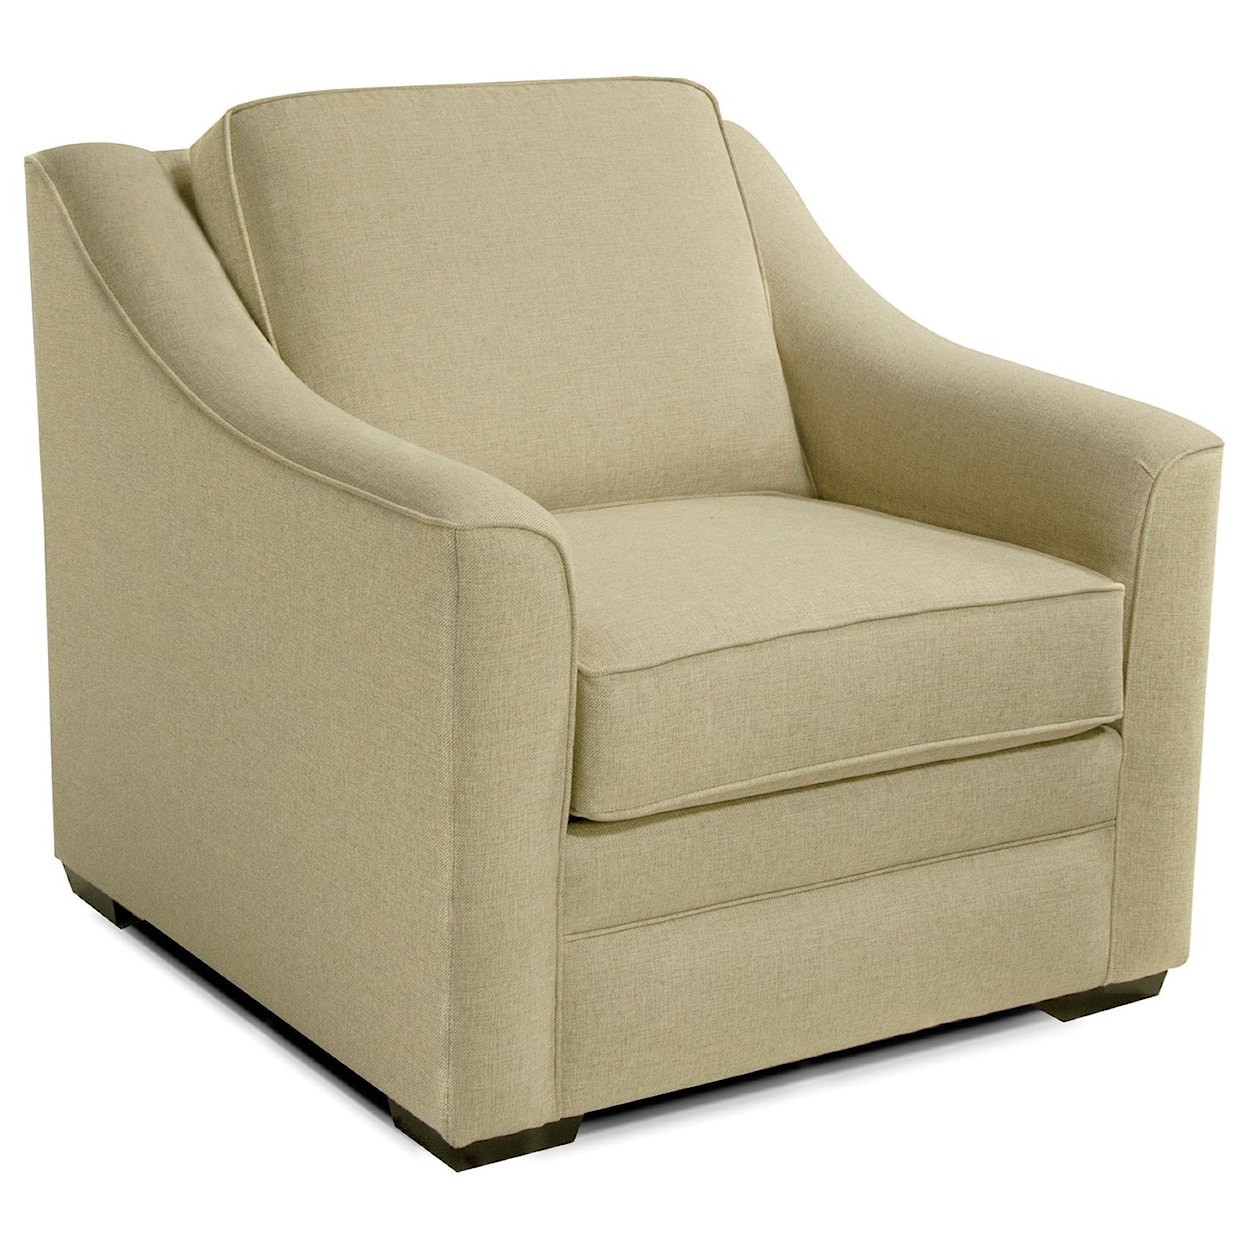 Dimensions 4T00 Series Chair